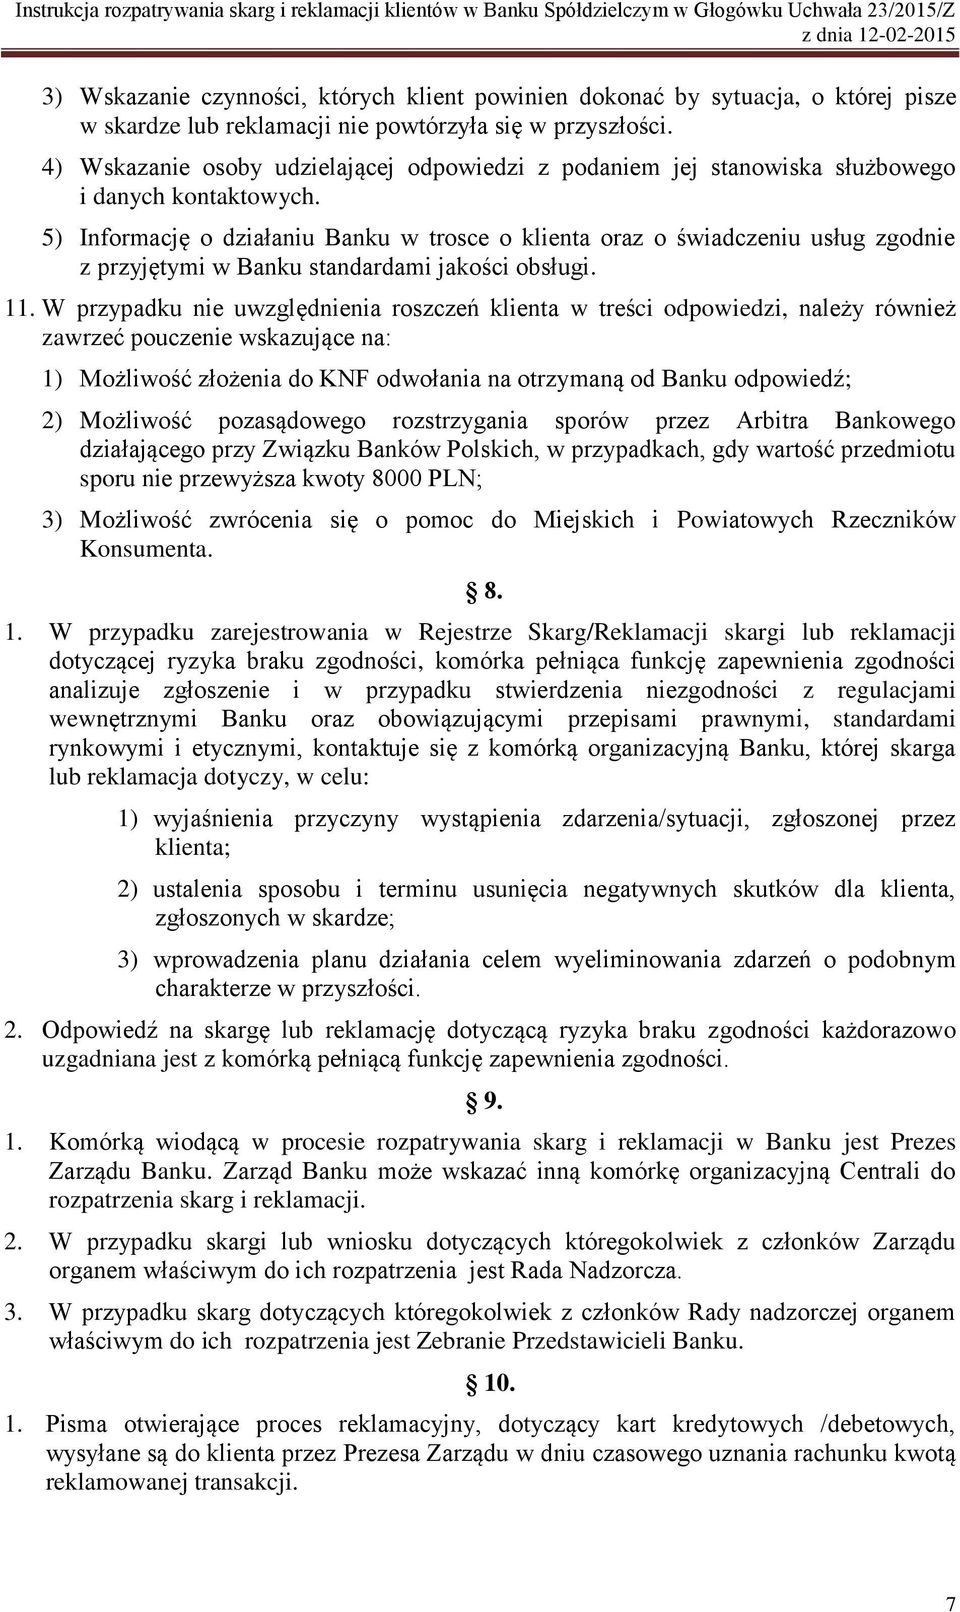 Bank Spółdzielczy w Głogówku - PDF Darmowe pobieranie